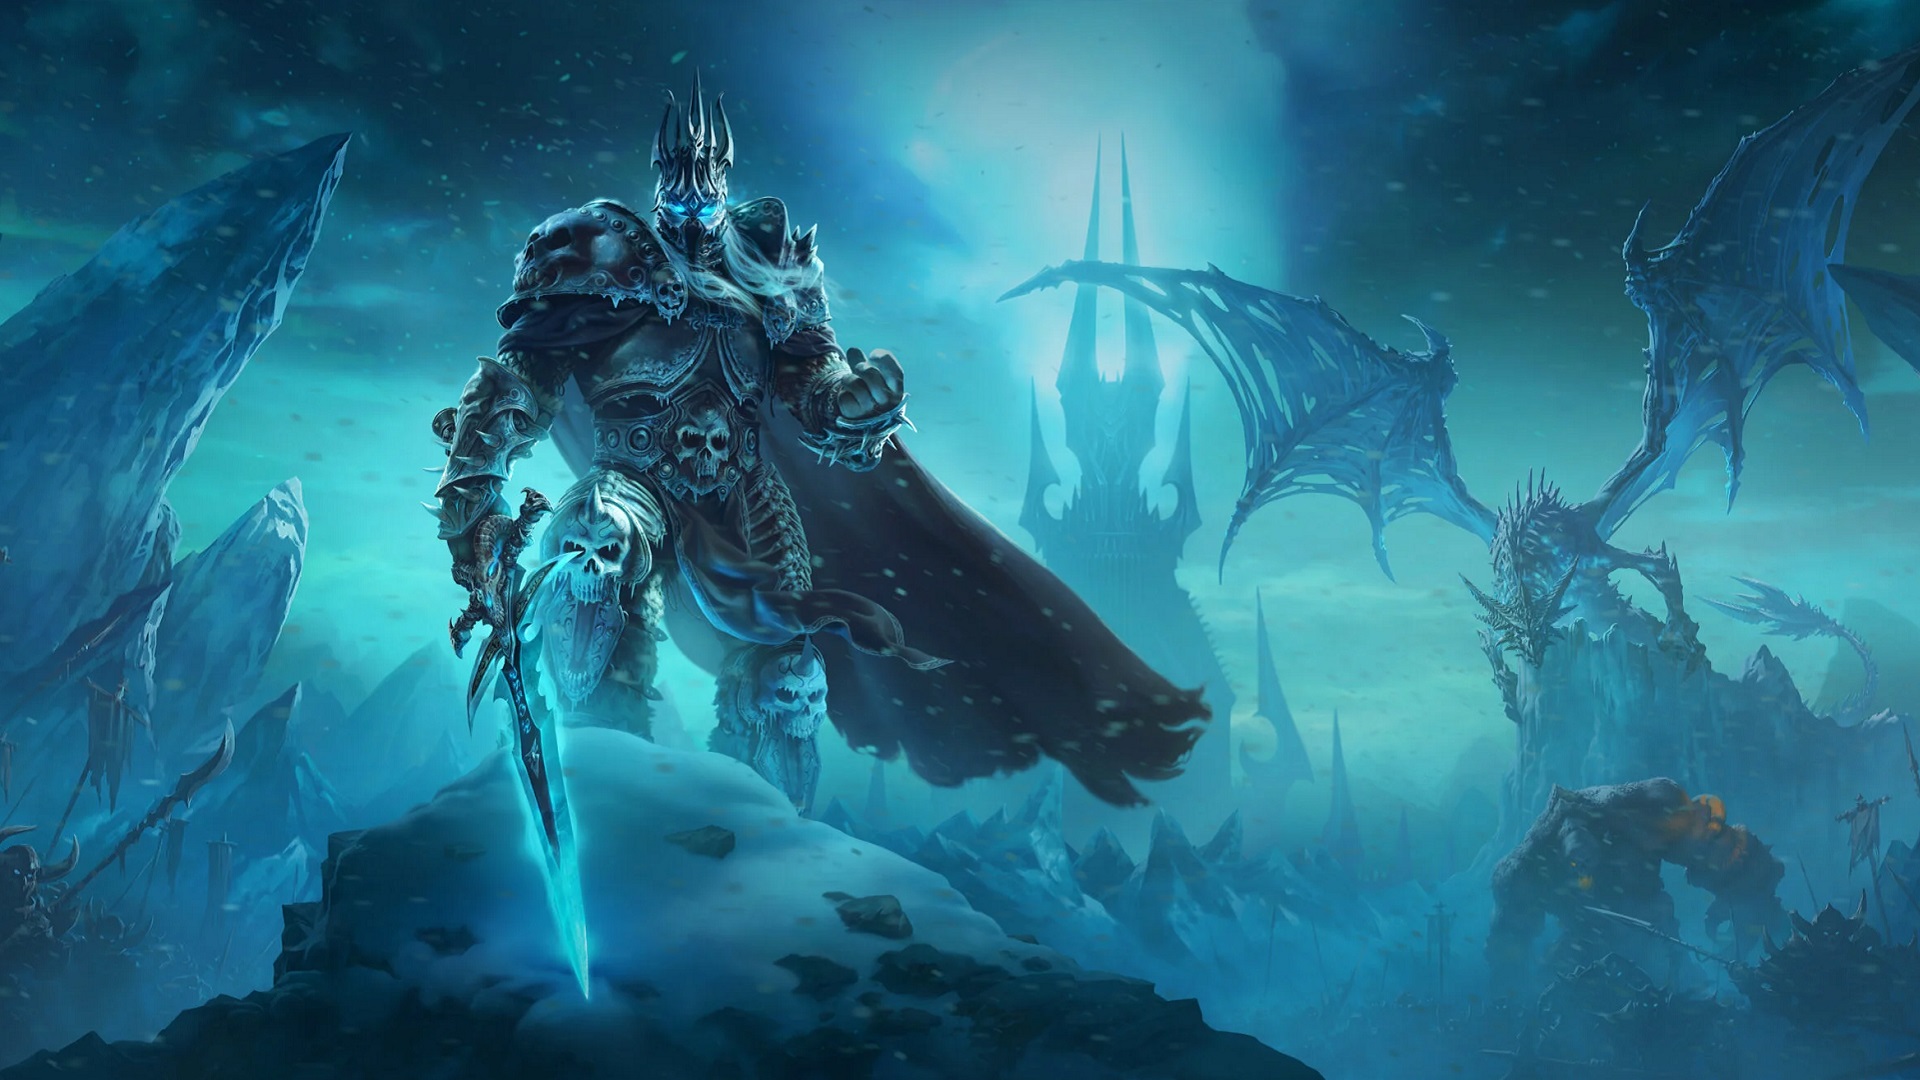 احتمال ساخت بازی های جدید Warcraft توسط استودیوهای دیگر وجود دارد